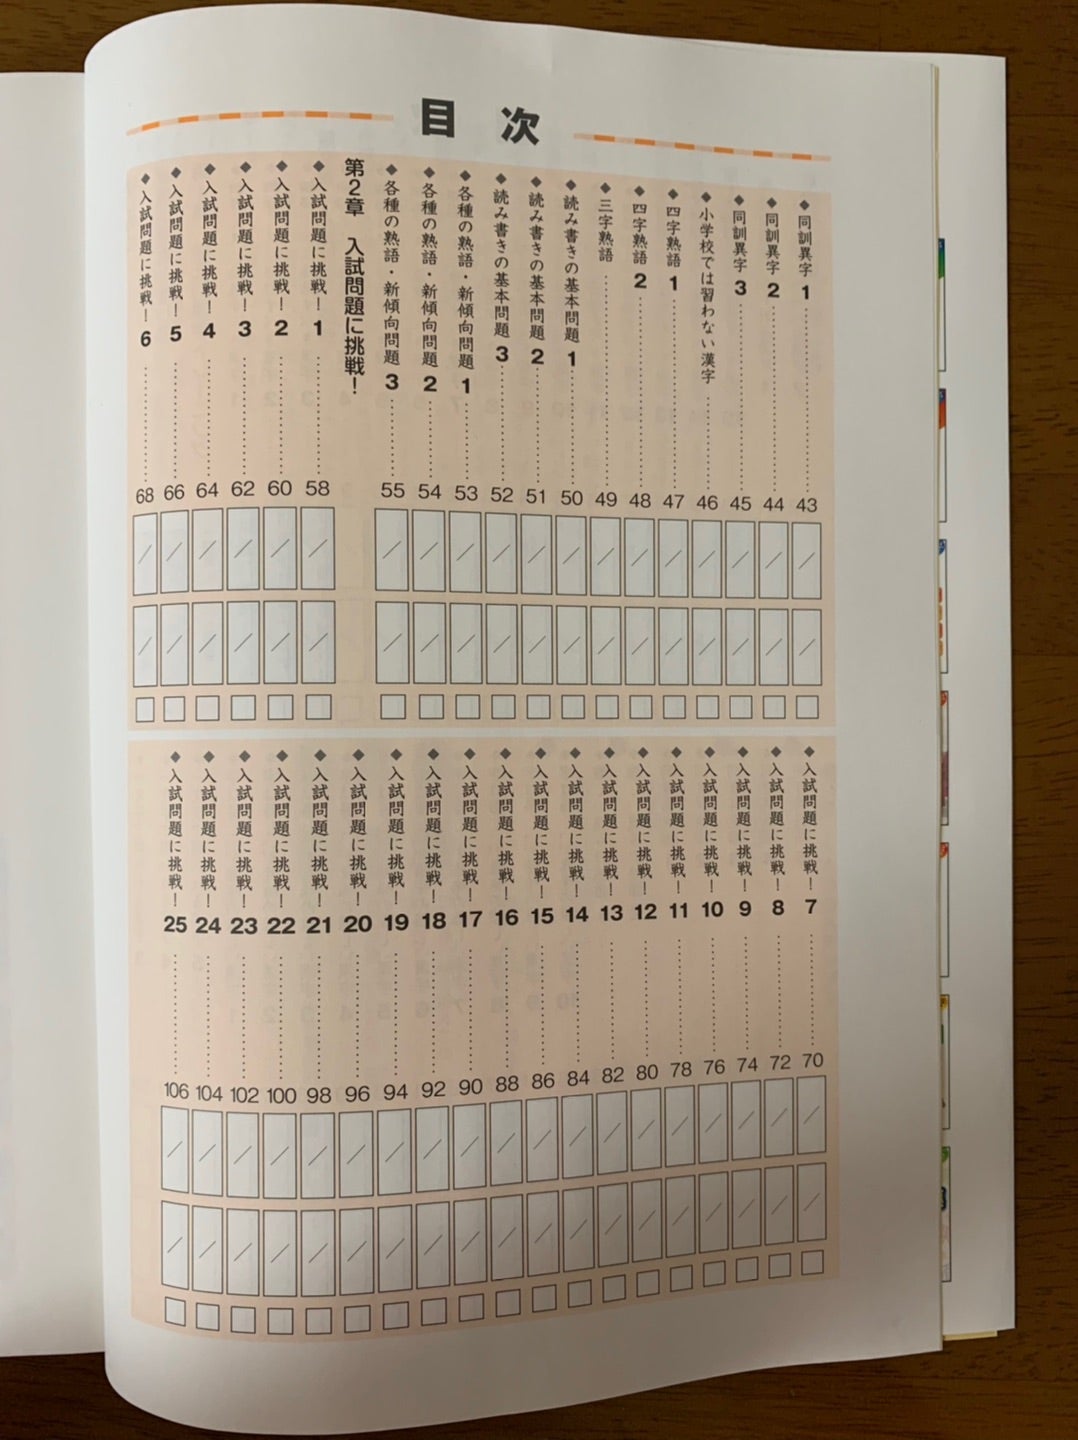 漢字の要Step2 単元別基礎演習 中学校入学ため など8冊